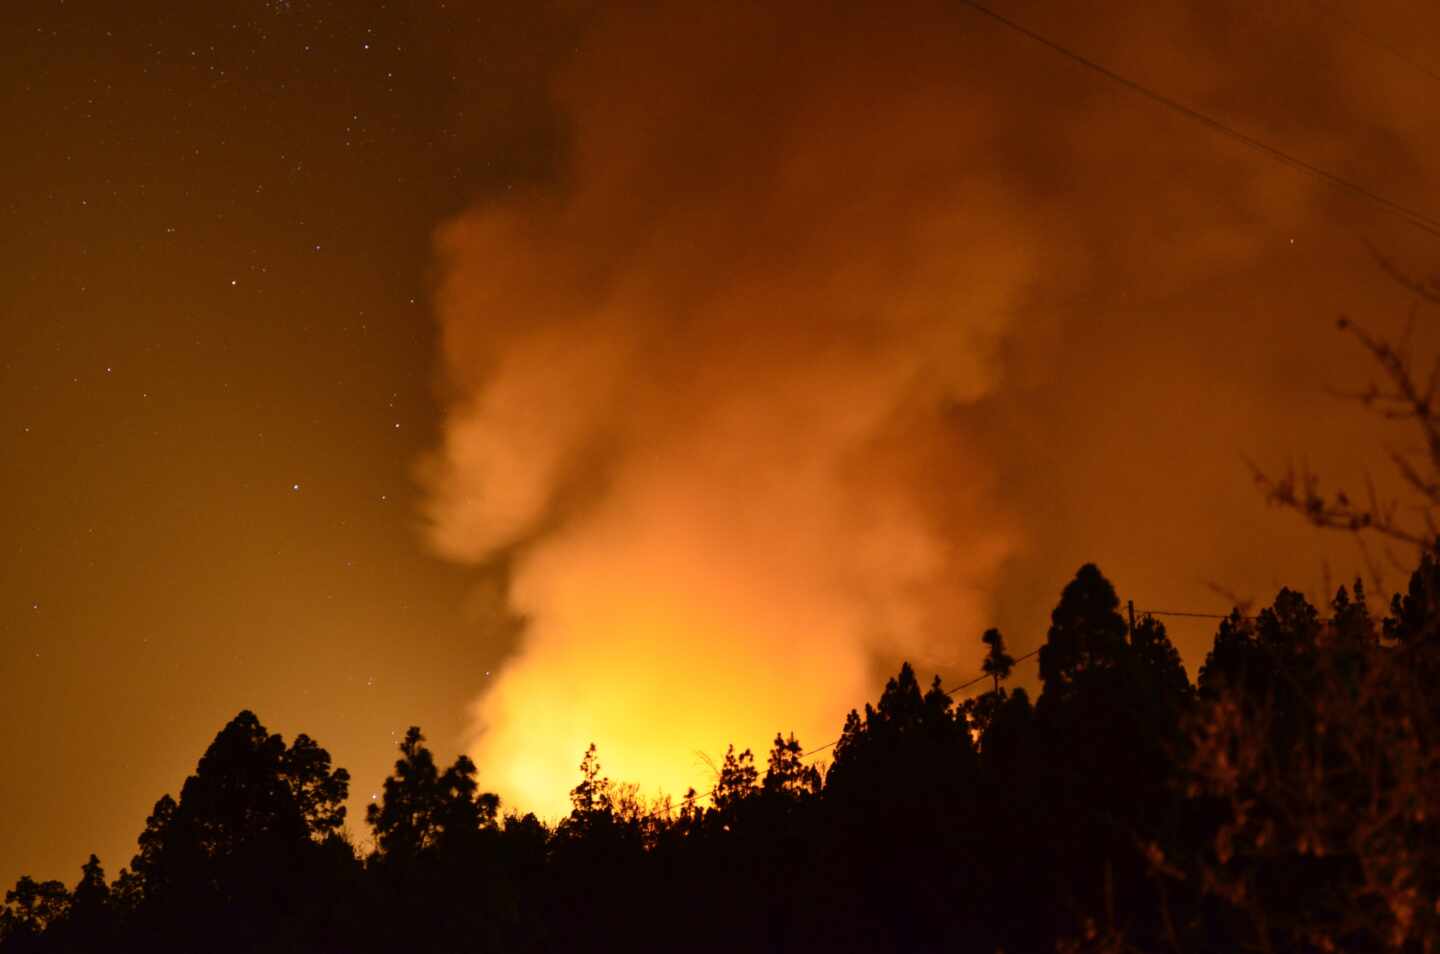 La cifra de vecinos desalojados por el incendio de Garafía (La Palma) asciende a 300 tras evacuar 11 barrios